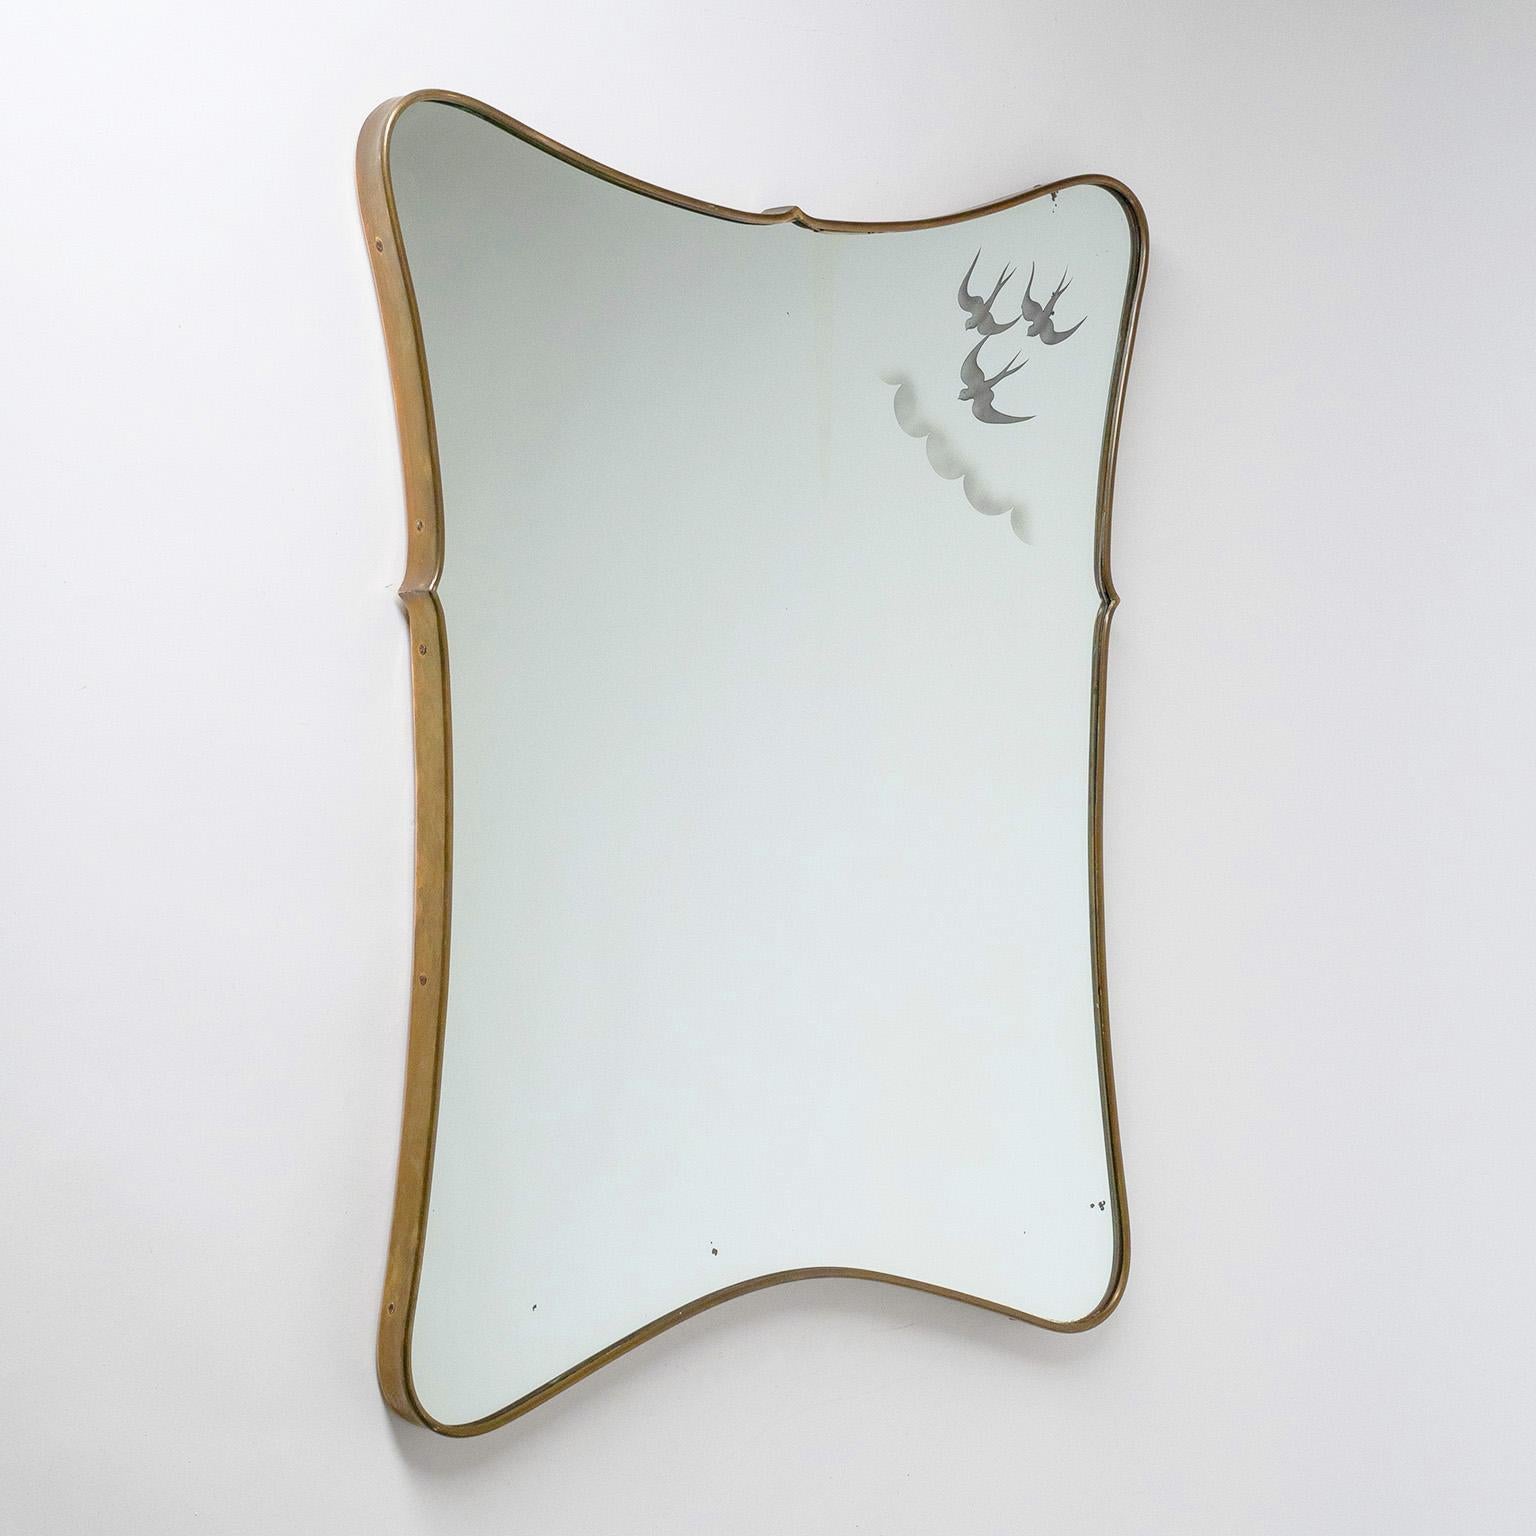 Rare miroir italien en laiton des années 1940-1950. Cadre continu en laiton de forme conique. Le miroir présente un charmant décor gravé ou imprimé dans la partie supérieure droite, représentant trois oiseaux en vol au milieu de nuages. Patine sur